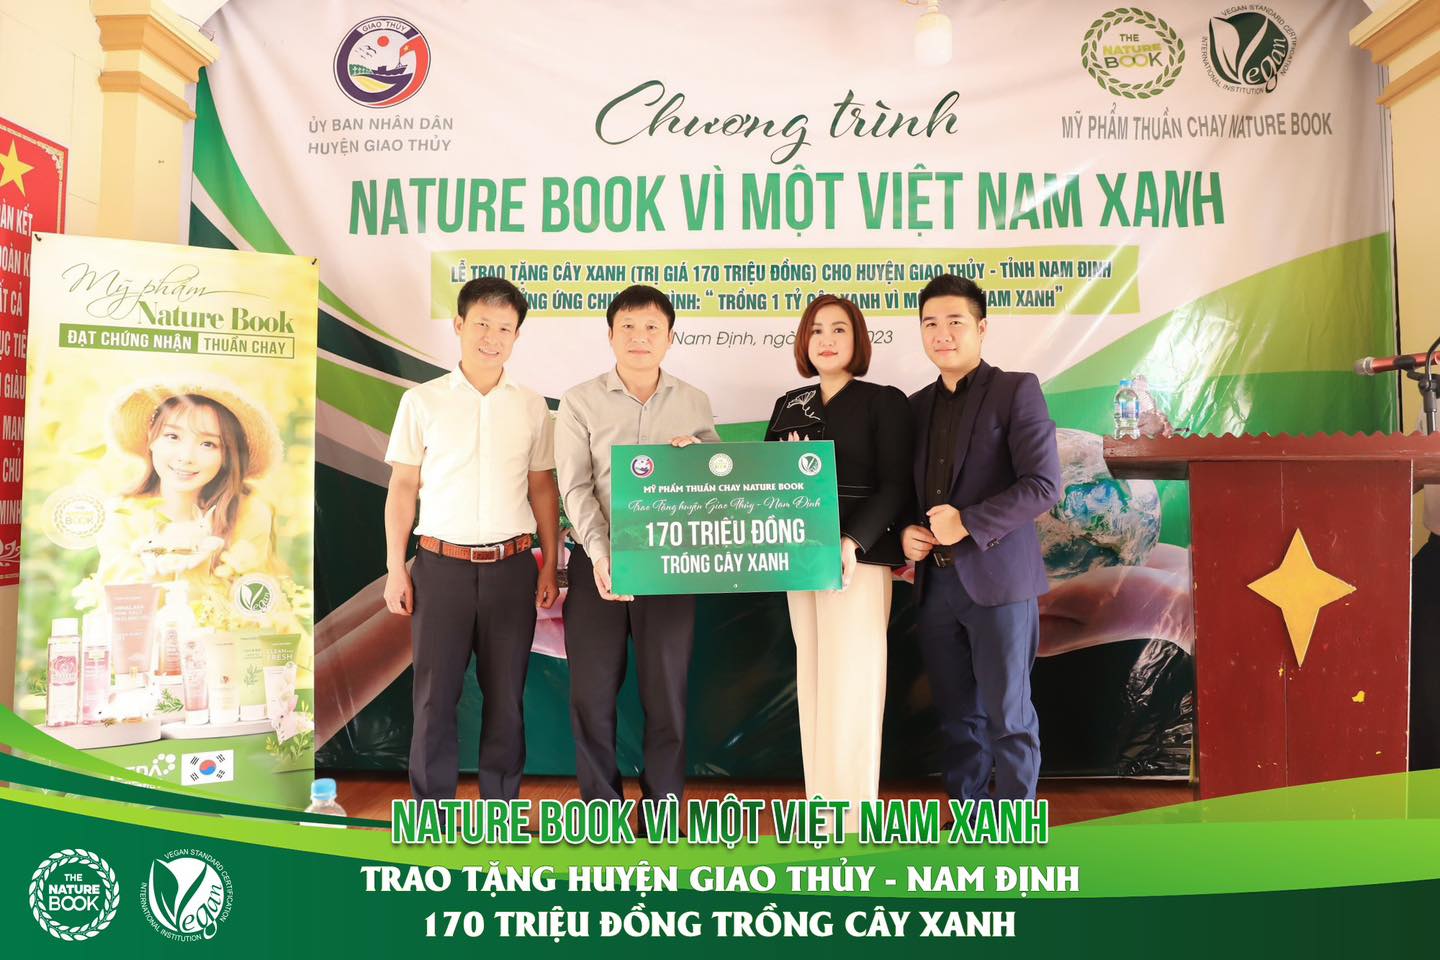 Mỹ phẩm thuần chay Nature Book chung tay vì một Việt Nam xanh